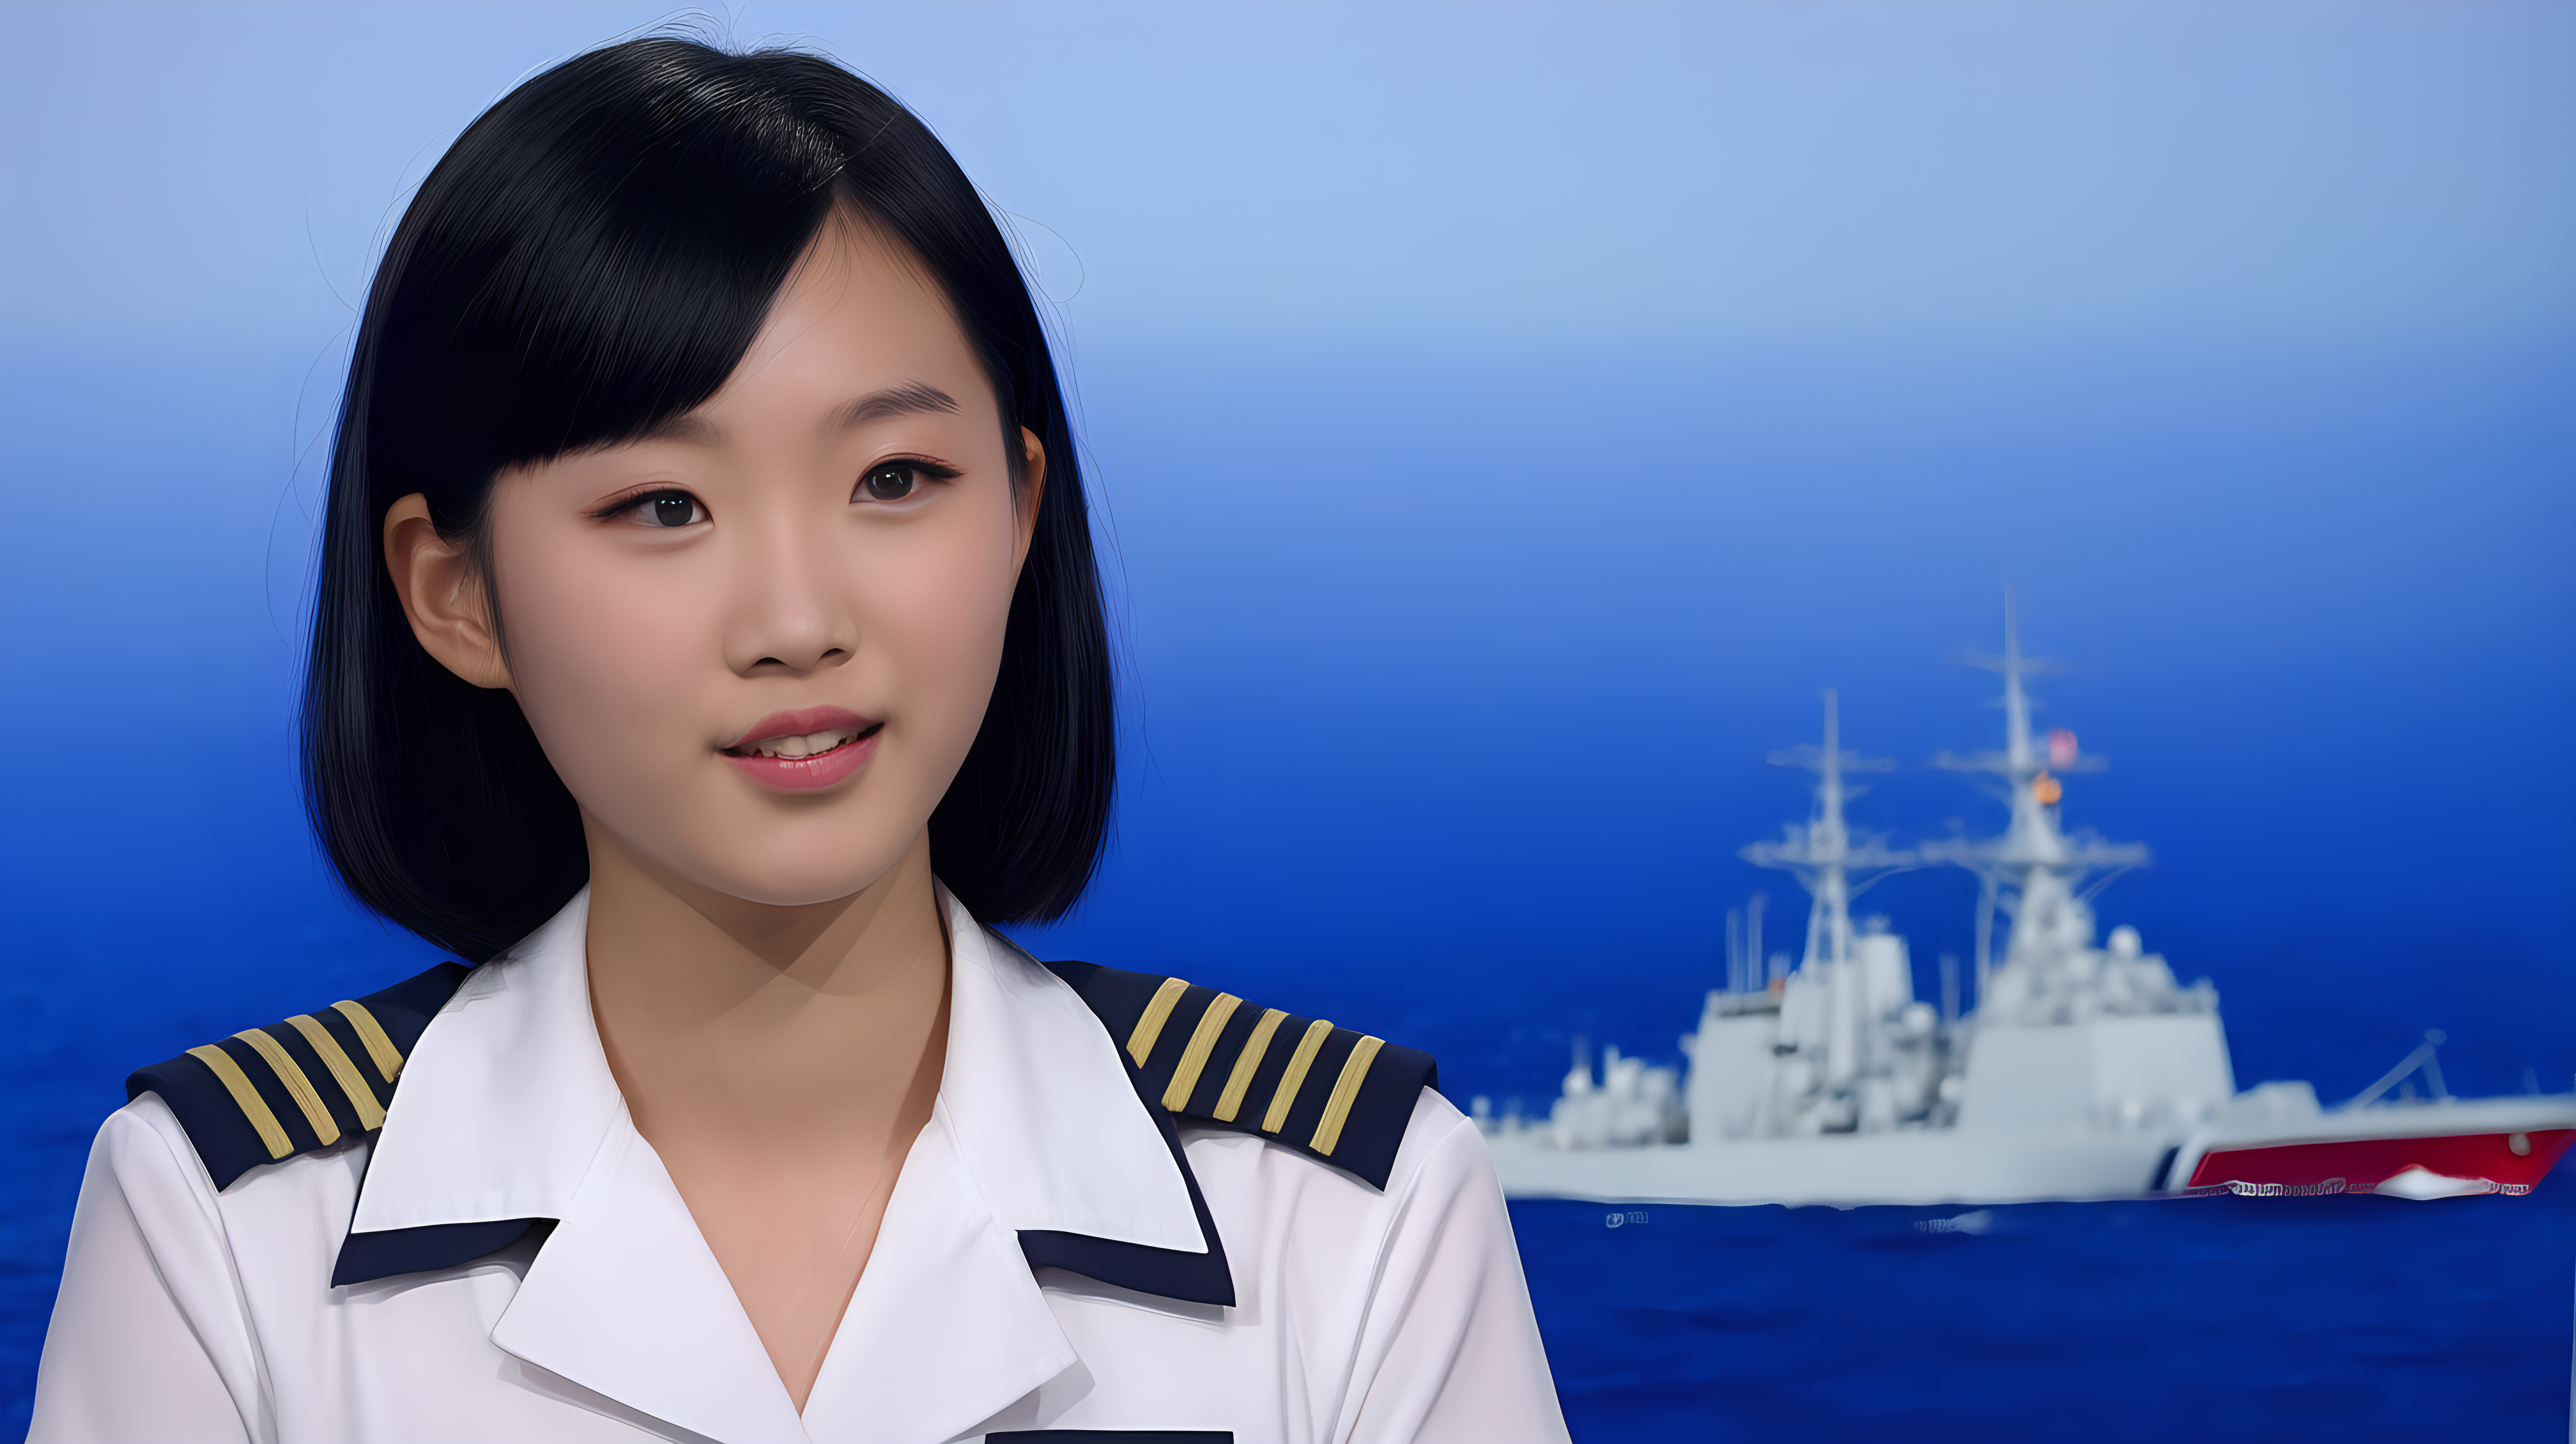 一名中国青年海军女兵
黑发
主持新闻